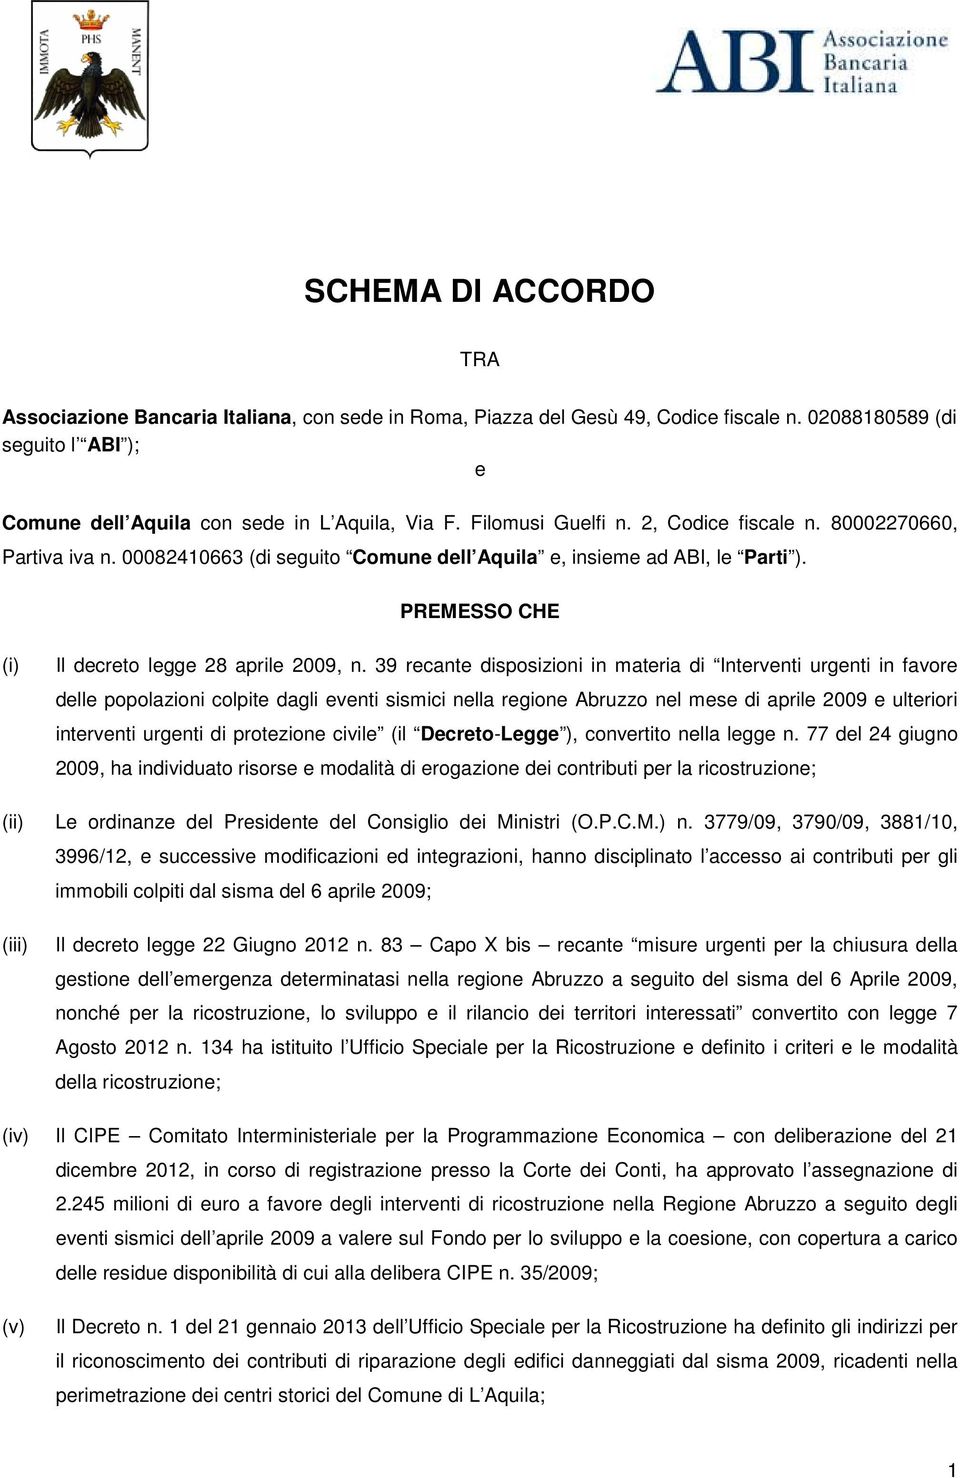 39 recante disposizioni in materia di Interventi urgenti in favore delle popolazioni colpite dagli eventi sismici nella regione Abruzzo nel mese di aprile 2009 e ulteriori interventi urgenti di